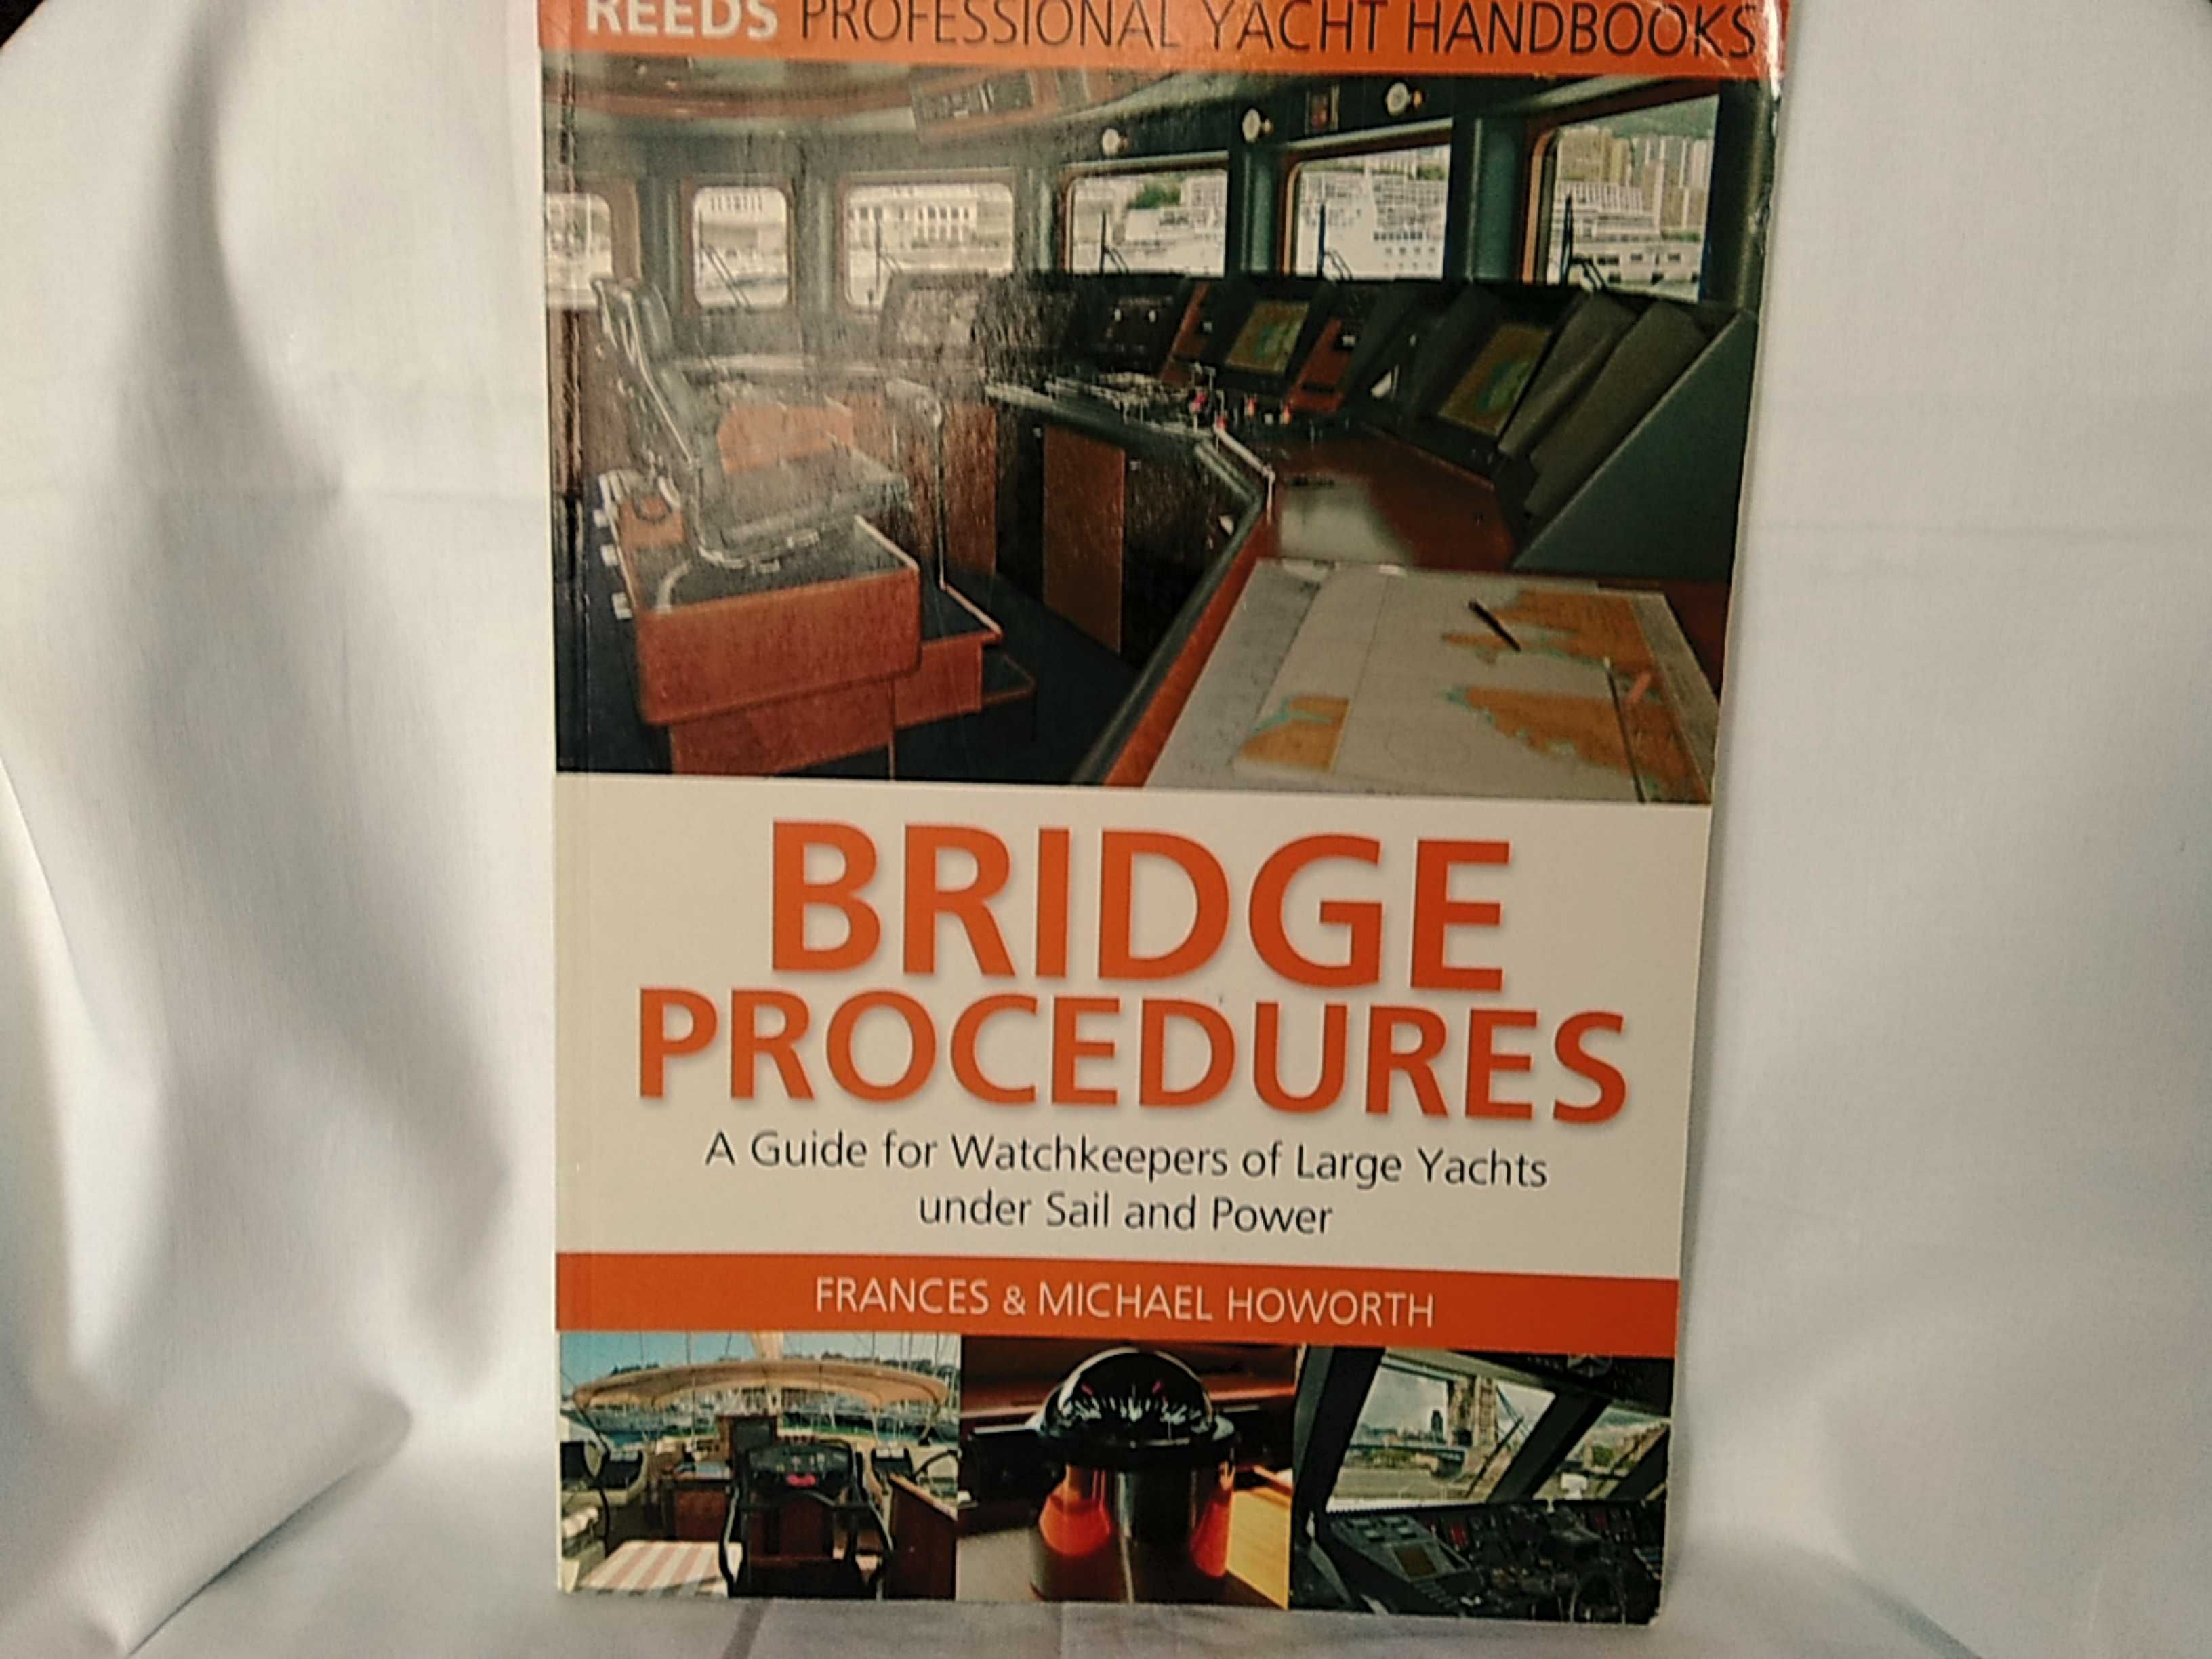 Bridge procedures